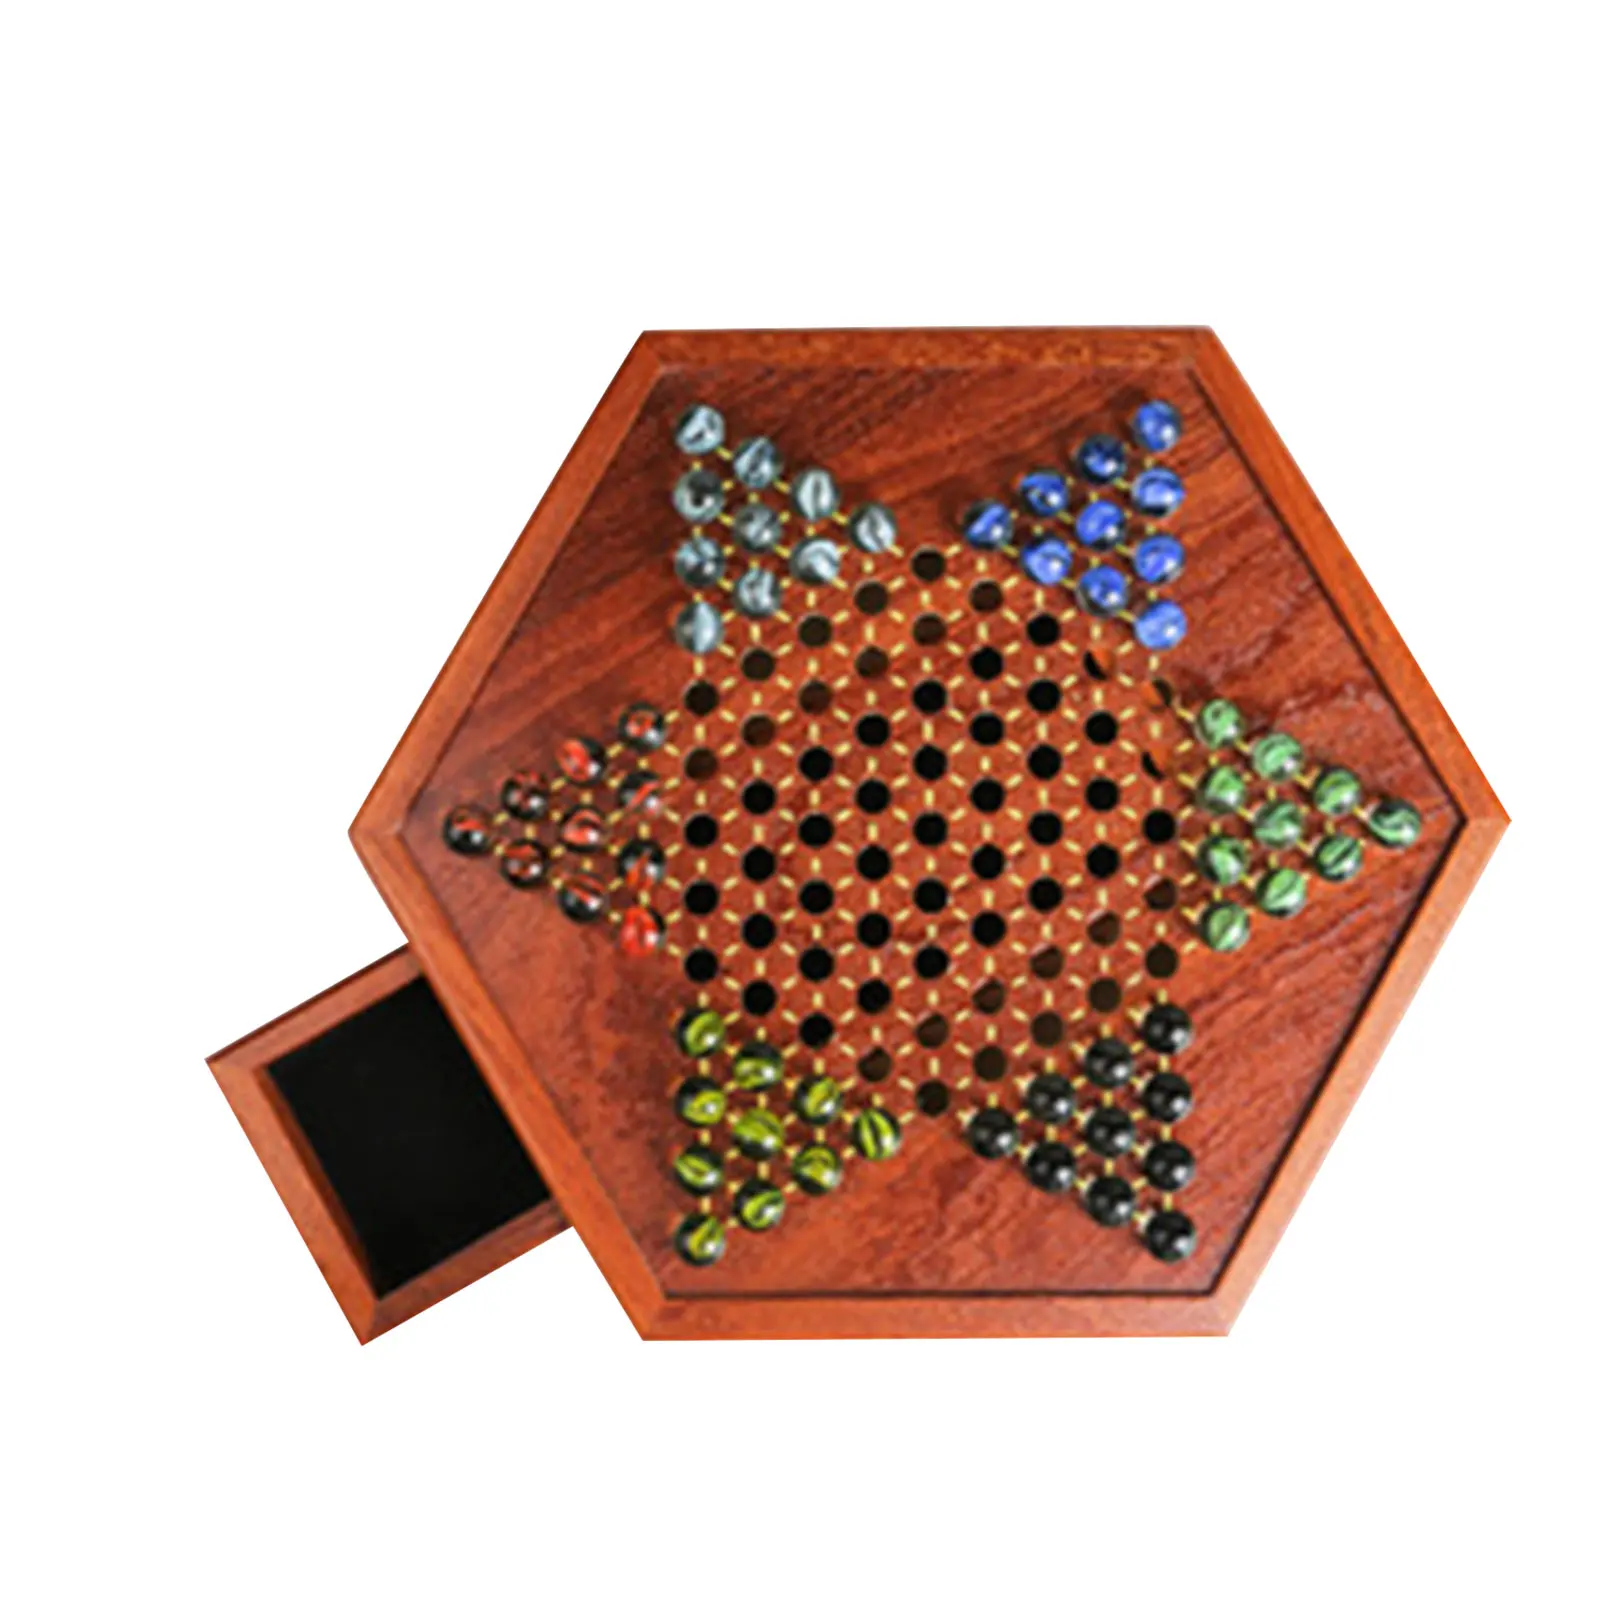 لعبة الداما الخشبية الصينية الشطرنج الرخام الخرز الزجاجي مع فتحة للبطاقات تخزين الأسرة لعبة جمع العمر 6 + مجلس لعبة 2022